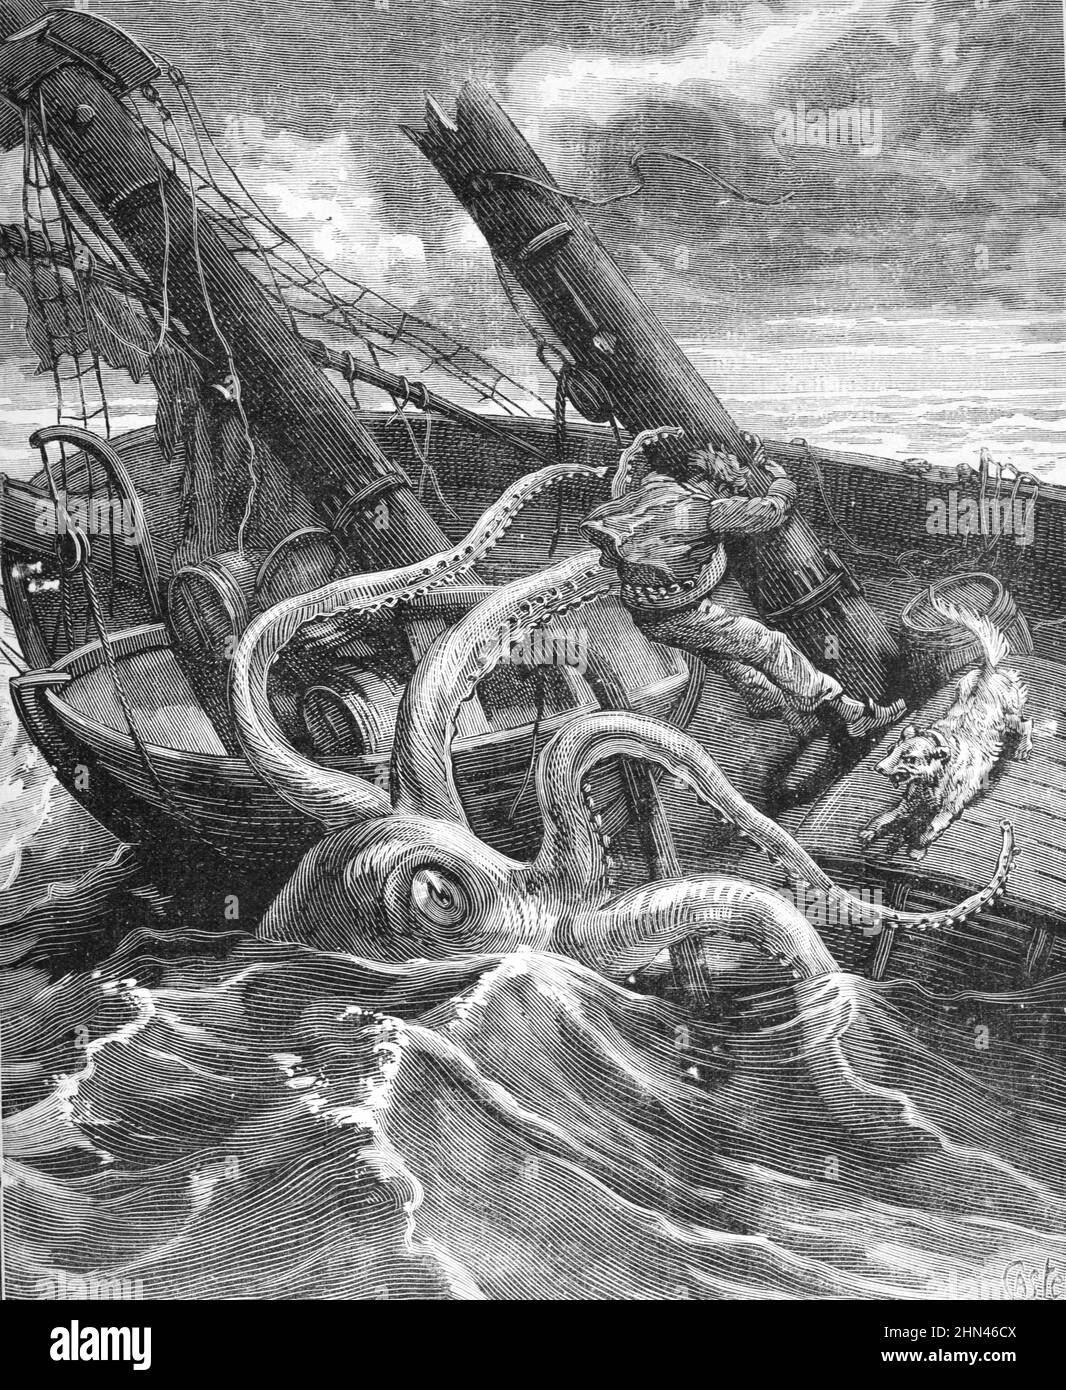 Squid géant ou Octopus attaquant bateau à voile dans l'océan Atlantique. Illustration ancienne ou gravure 1881 (Castelli) Banque D'Images